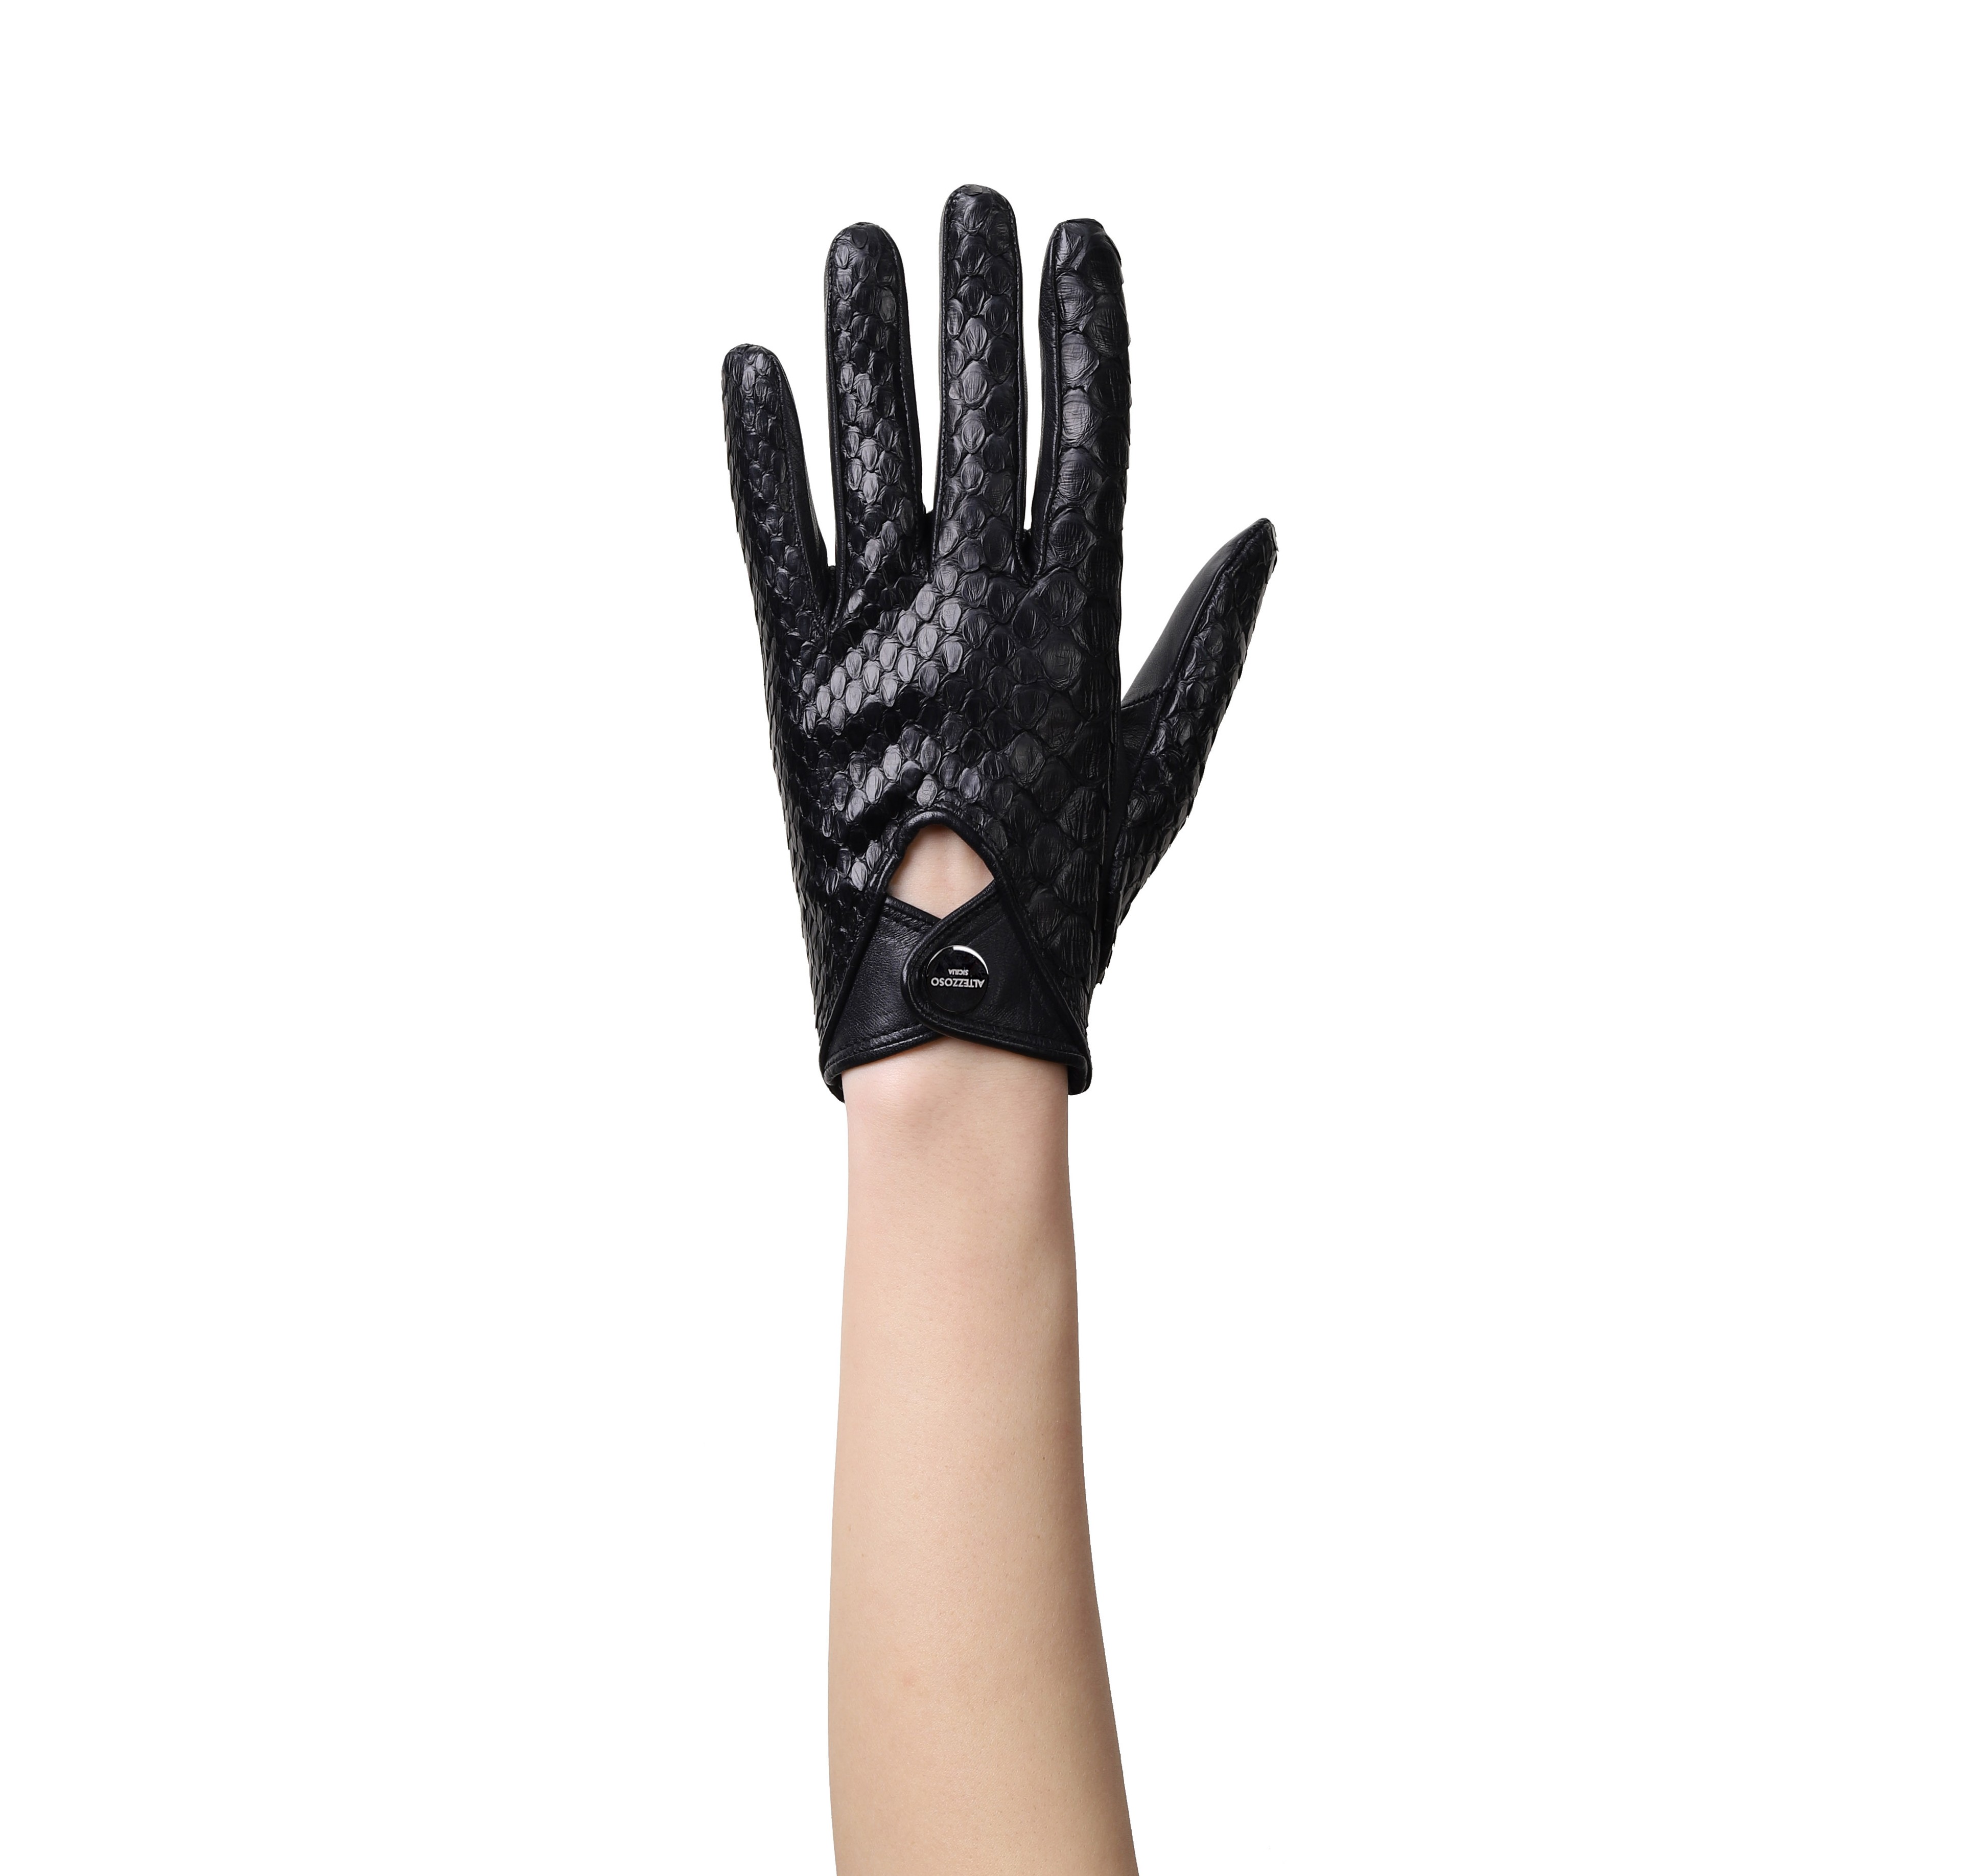 Feline Pyhton Skin Gloves for Women